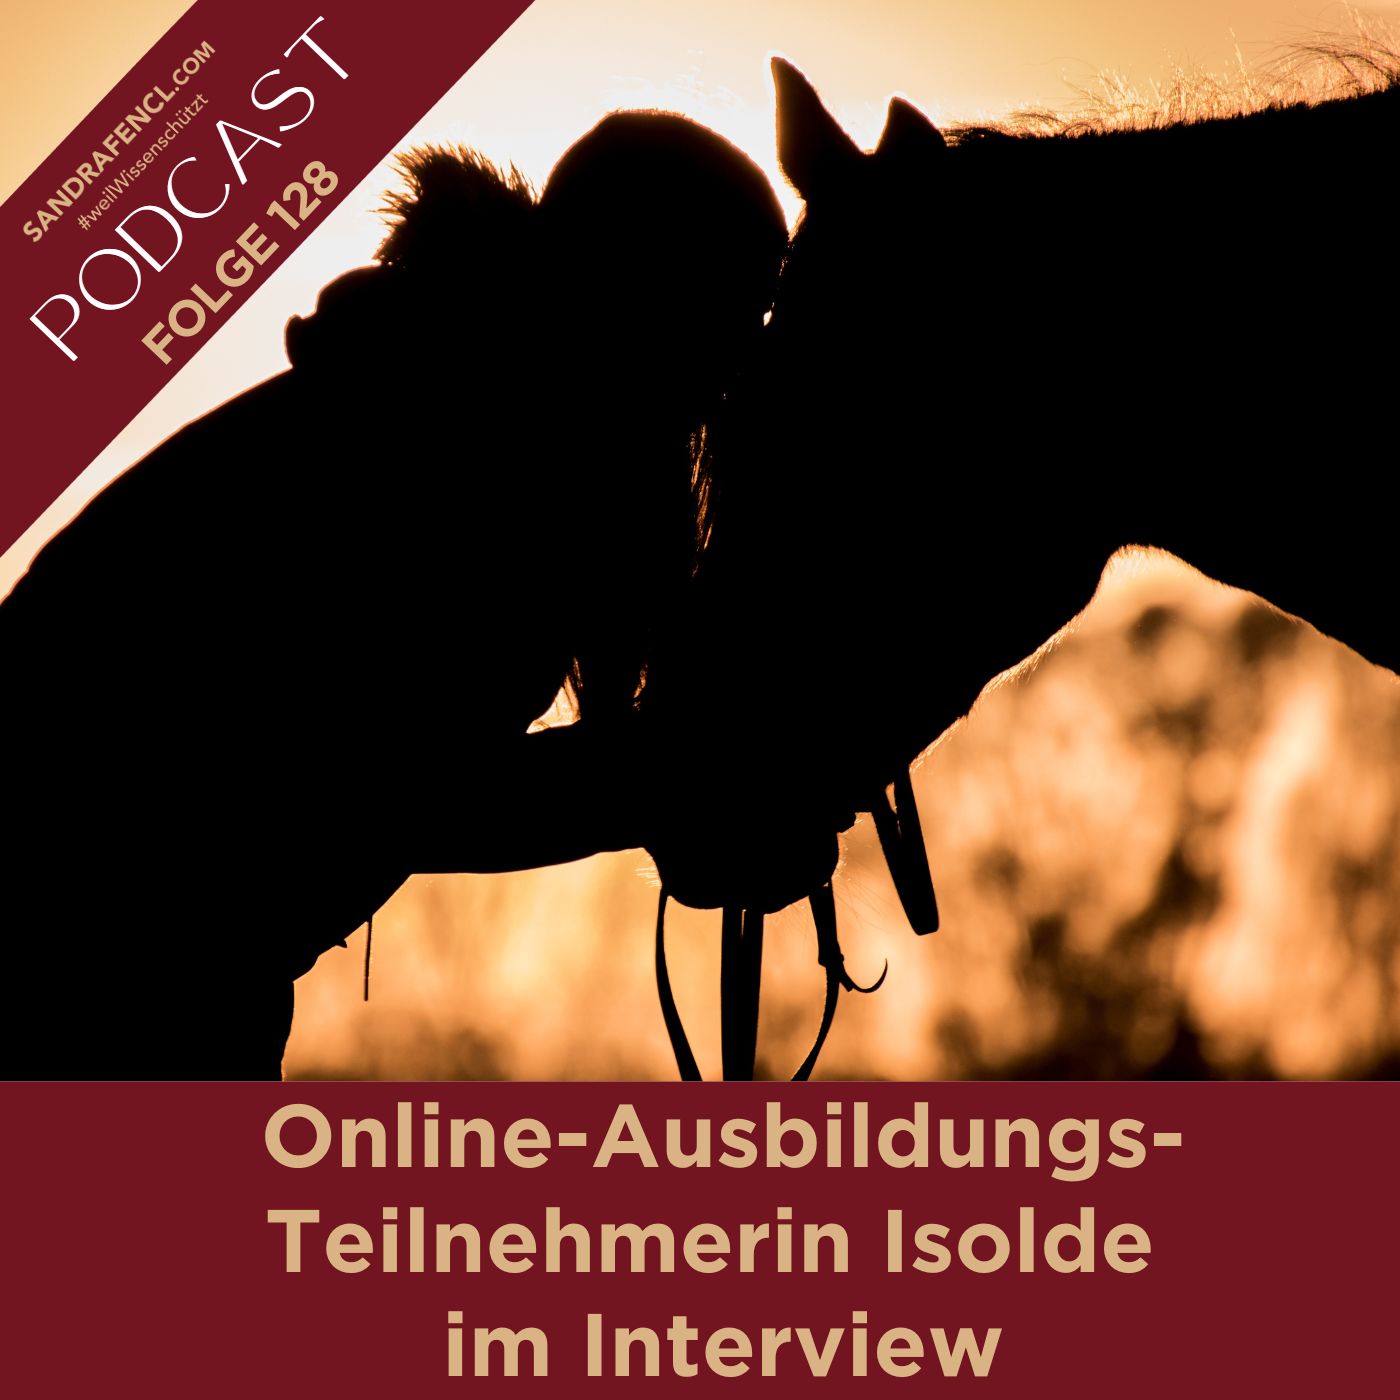 🏇 Online-Ausbildungs-Teilnehmerin Isolde im Interview 🤩